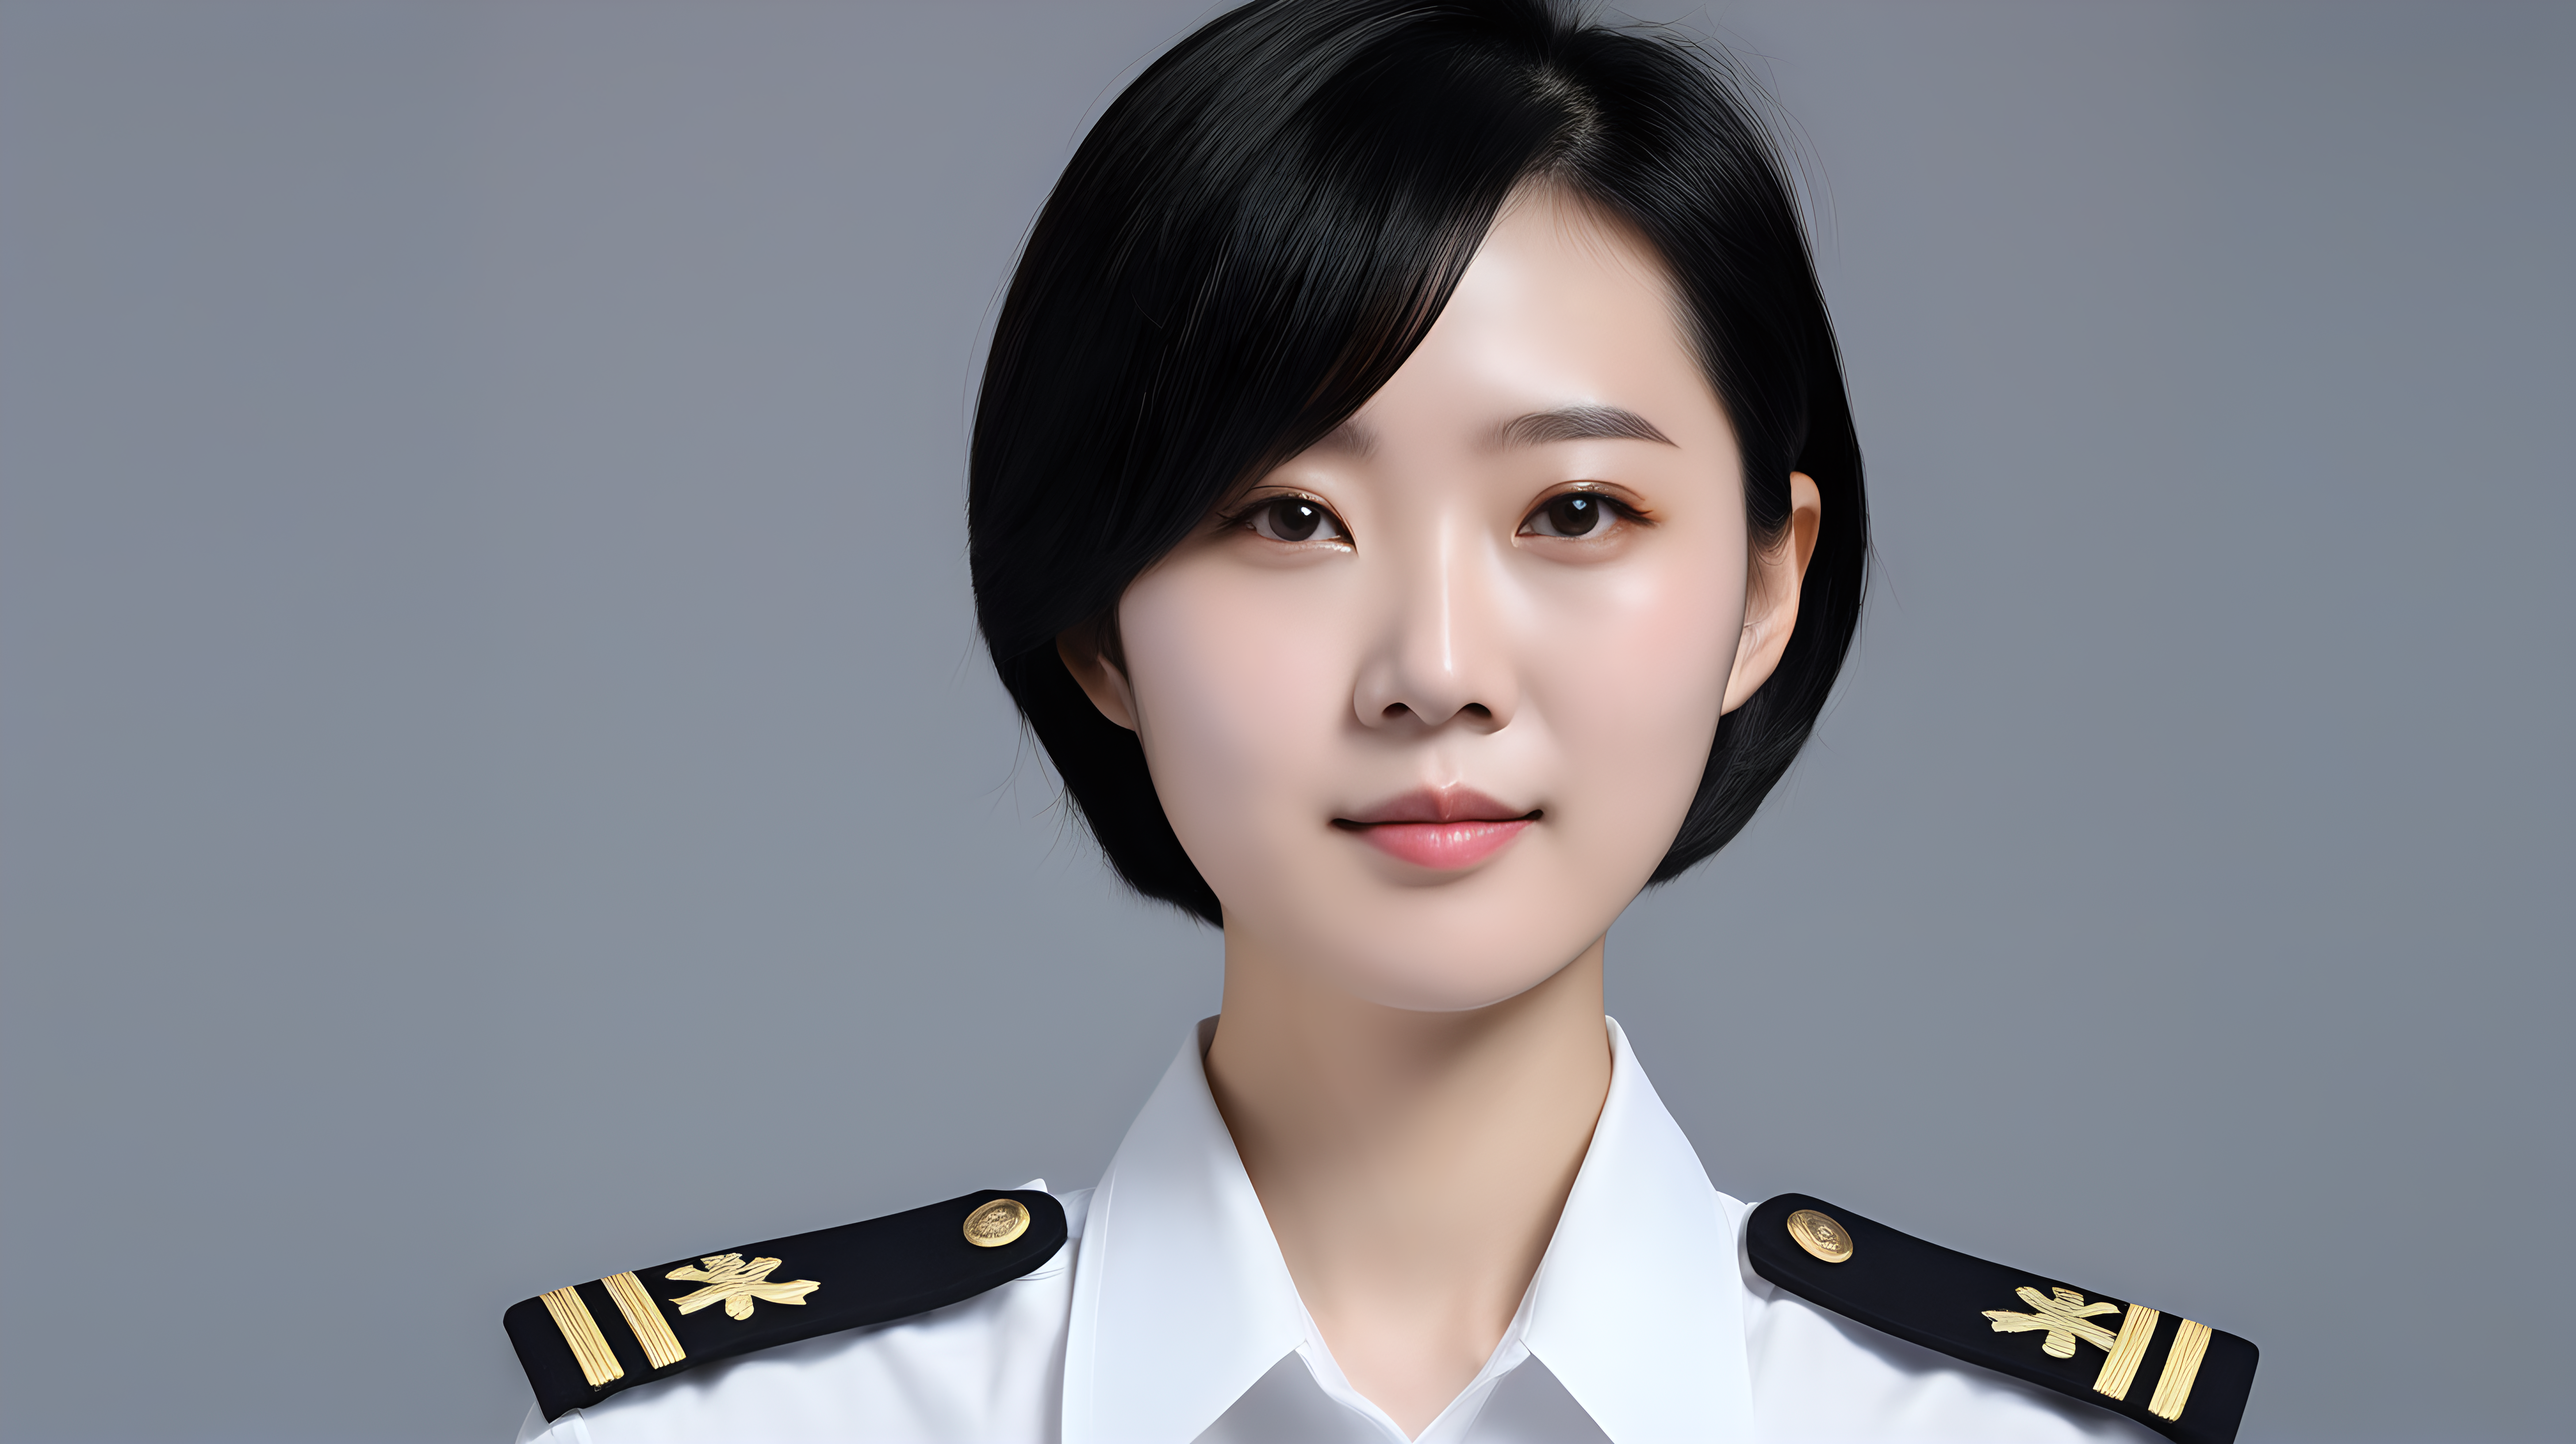 一名中国海军女兵
青年人
短发
黑发
白衬衫
正脸
中等视距